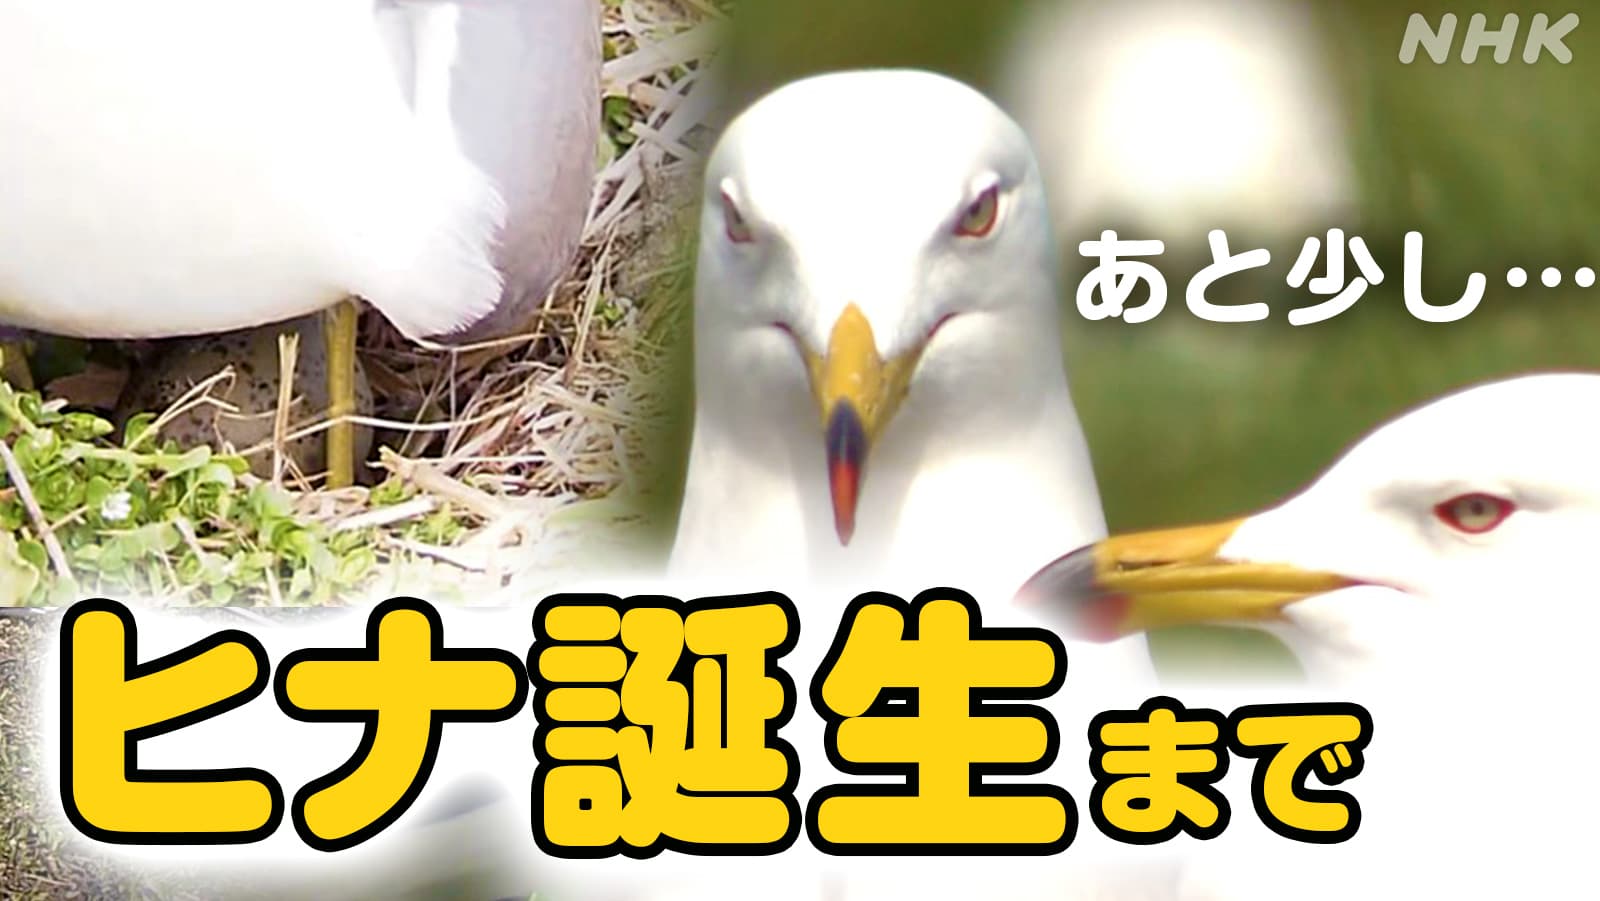 青森県八戸市 蕪島でウミネコの産卵始まる